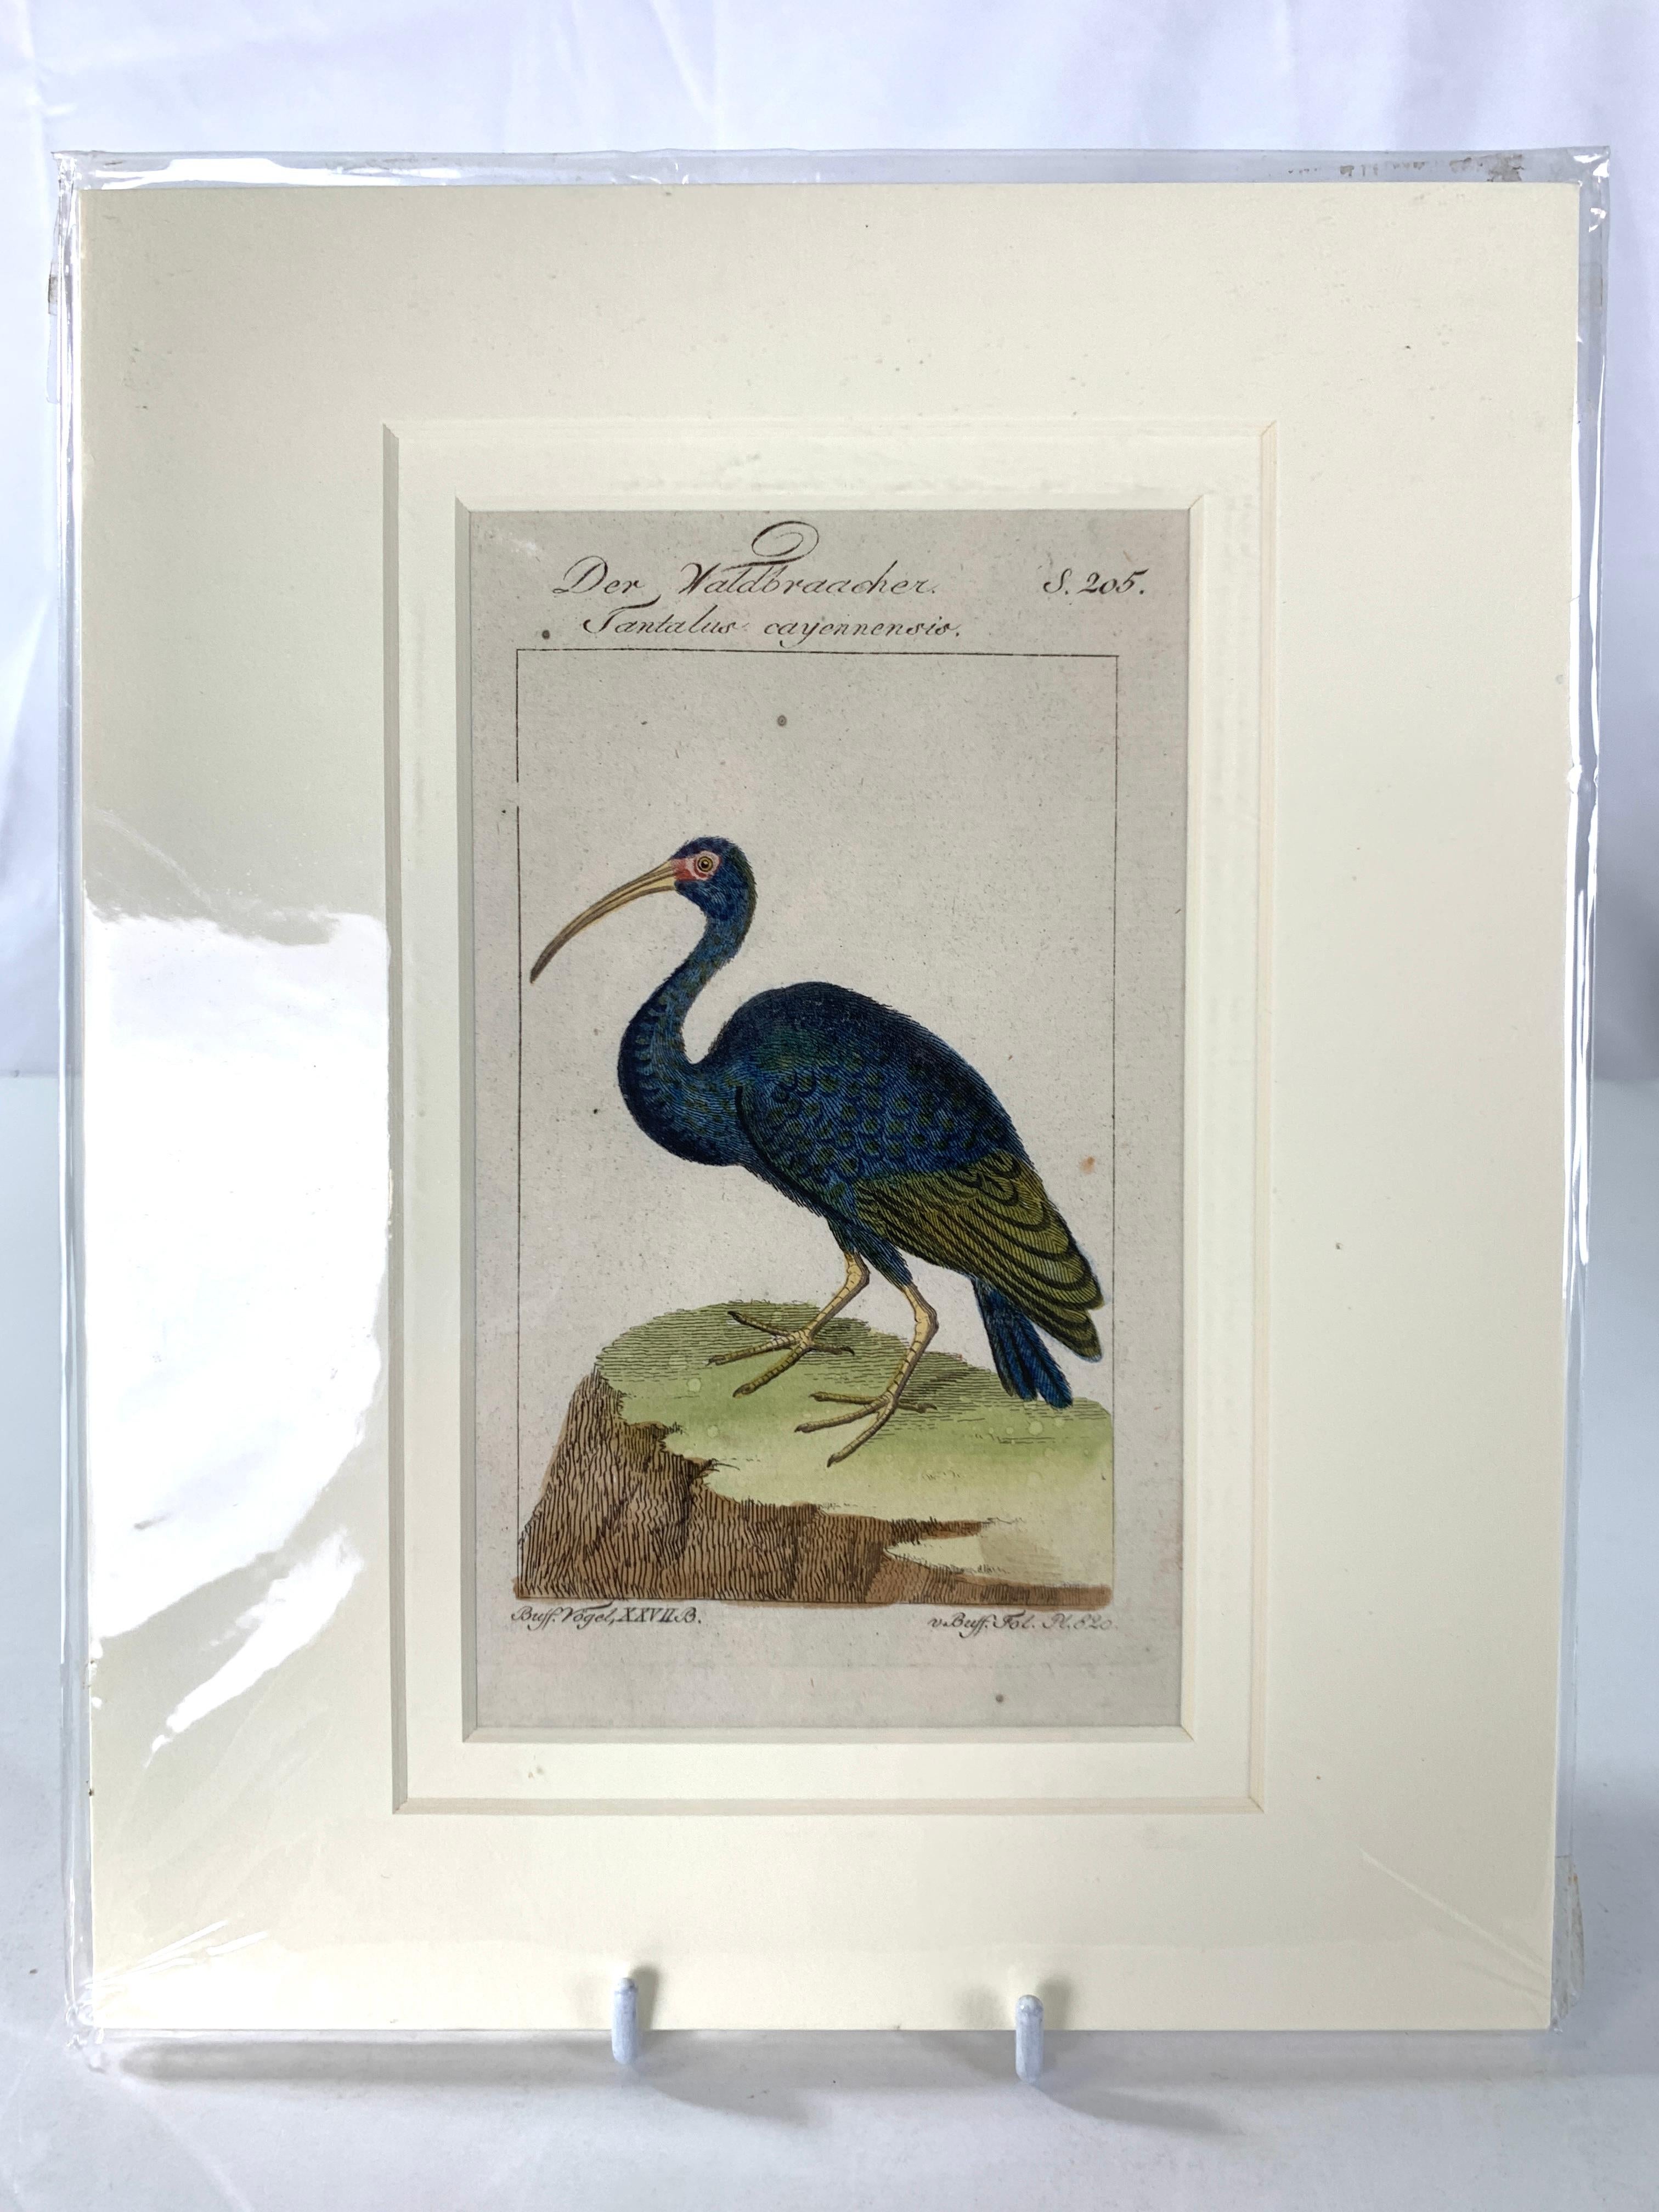 Gravures d'oiseaux colorées à la main - Ornements ornithologiques français Martinet-Buffon vers 1790 1